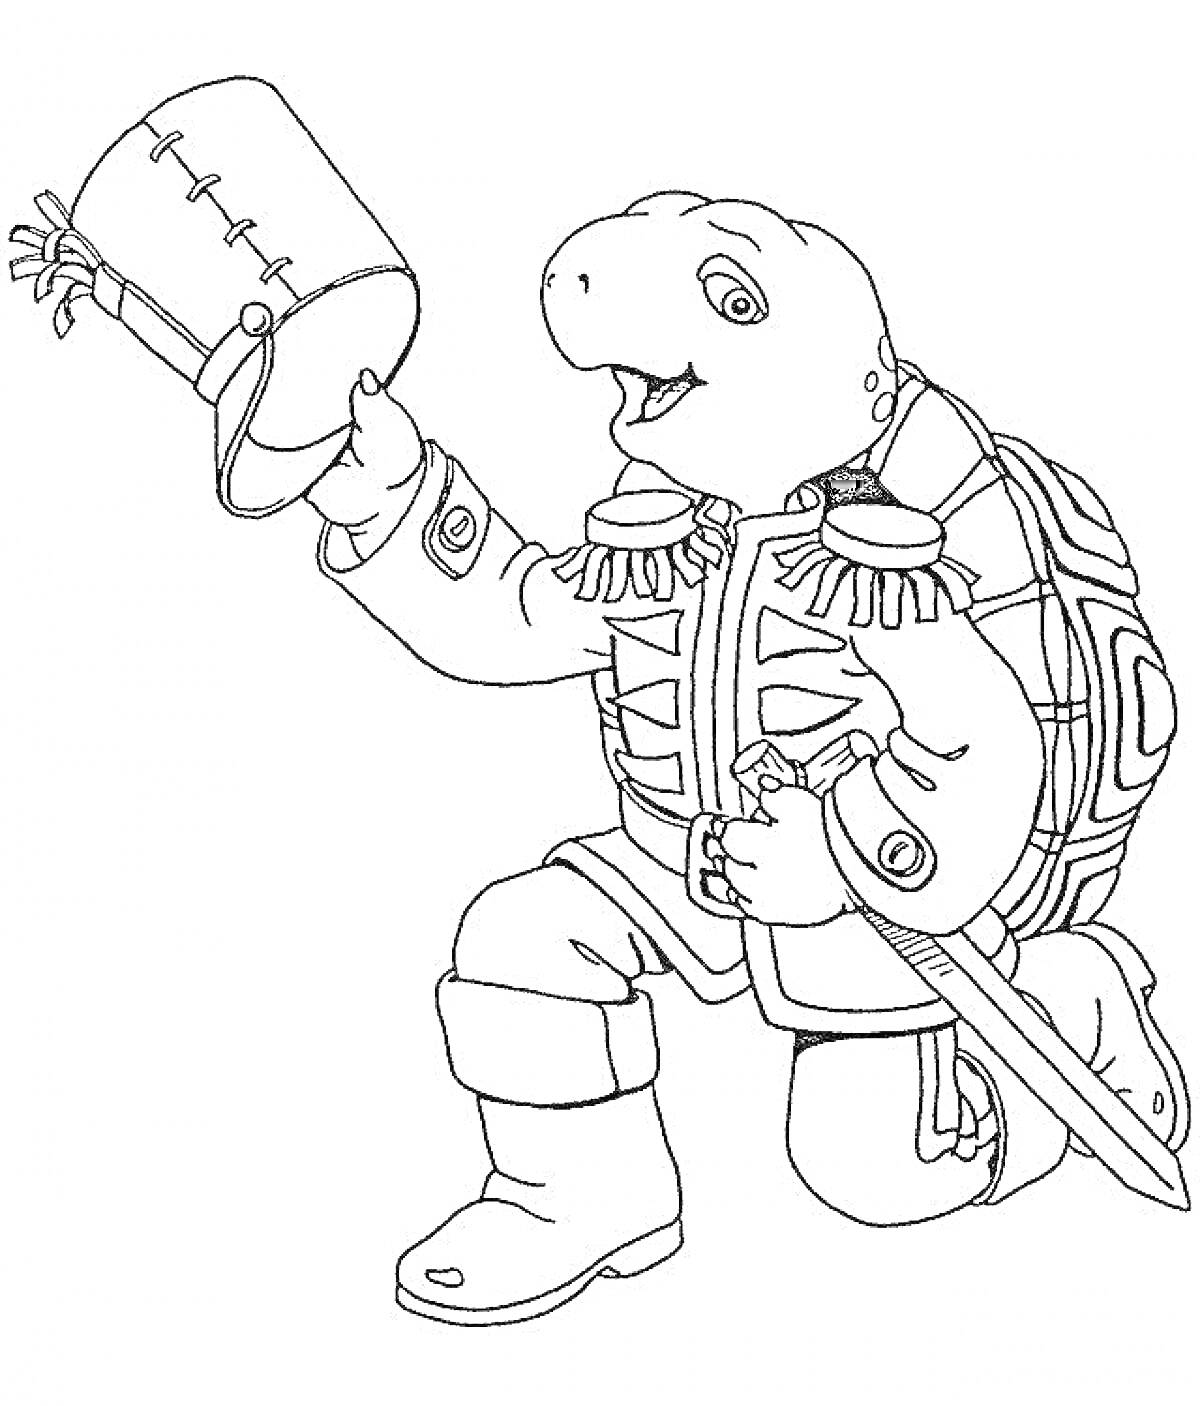 Раскраска Черепашка в мундире с мечом и барабаном